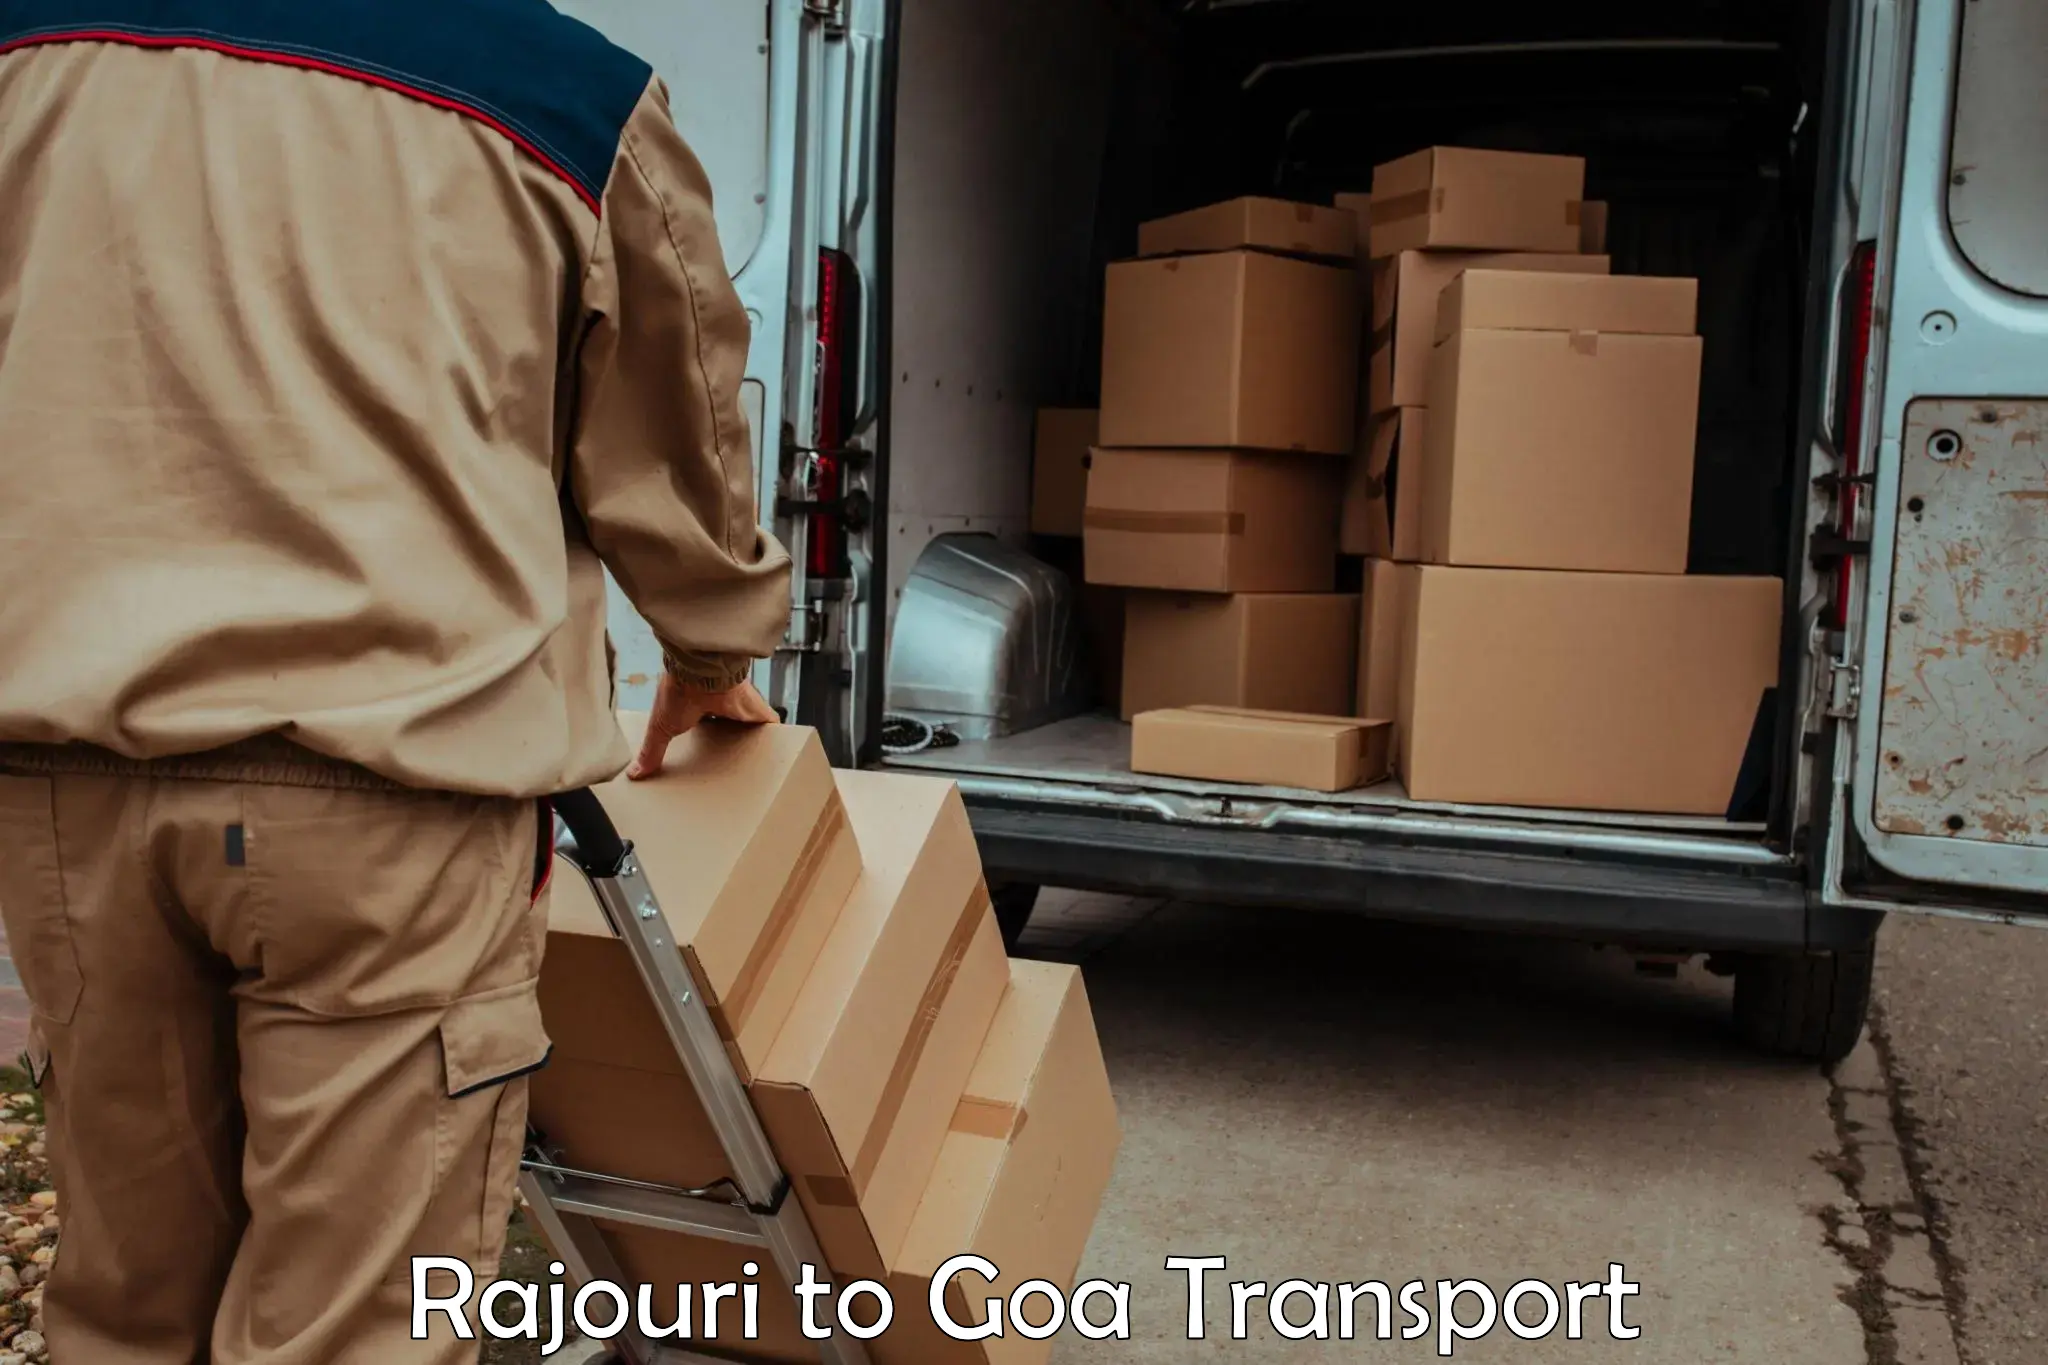 Pick up transport service Rajouri to Panaji